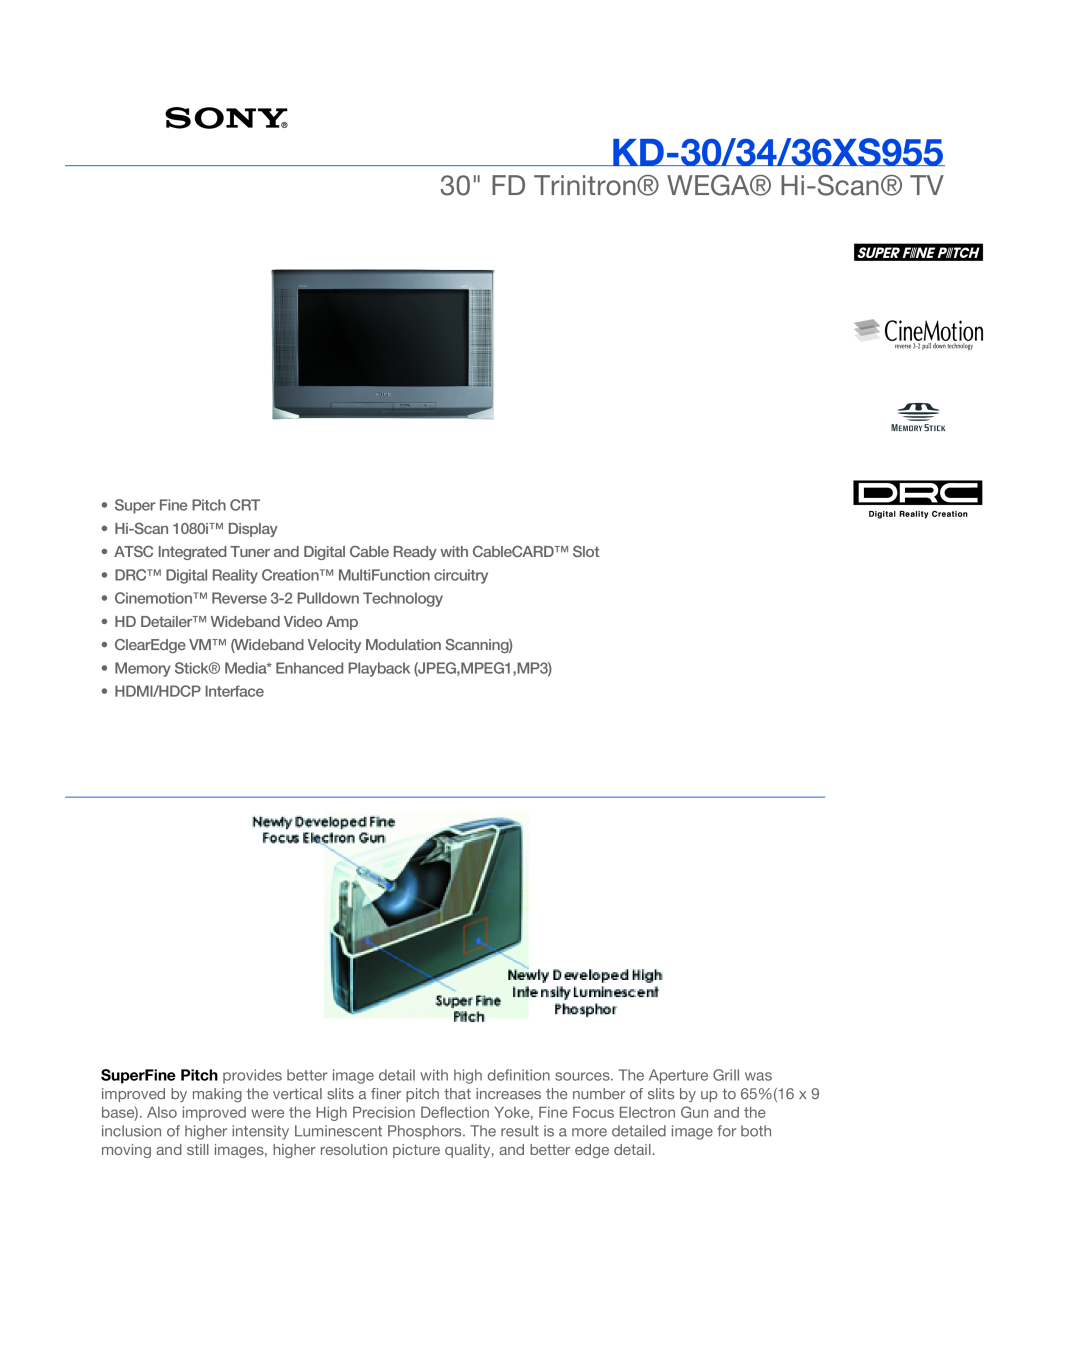 Sony KD-36XS955, TRINITRON WEGA manual KD-30/34/36XS955, FD Trinitron WEGA Hi-Scan TV 